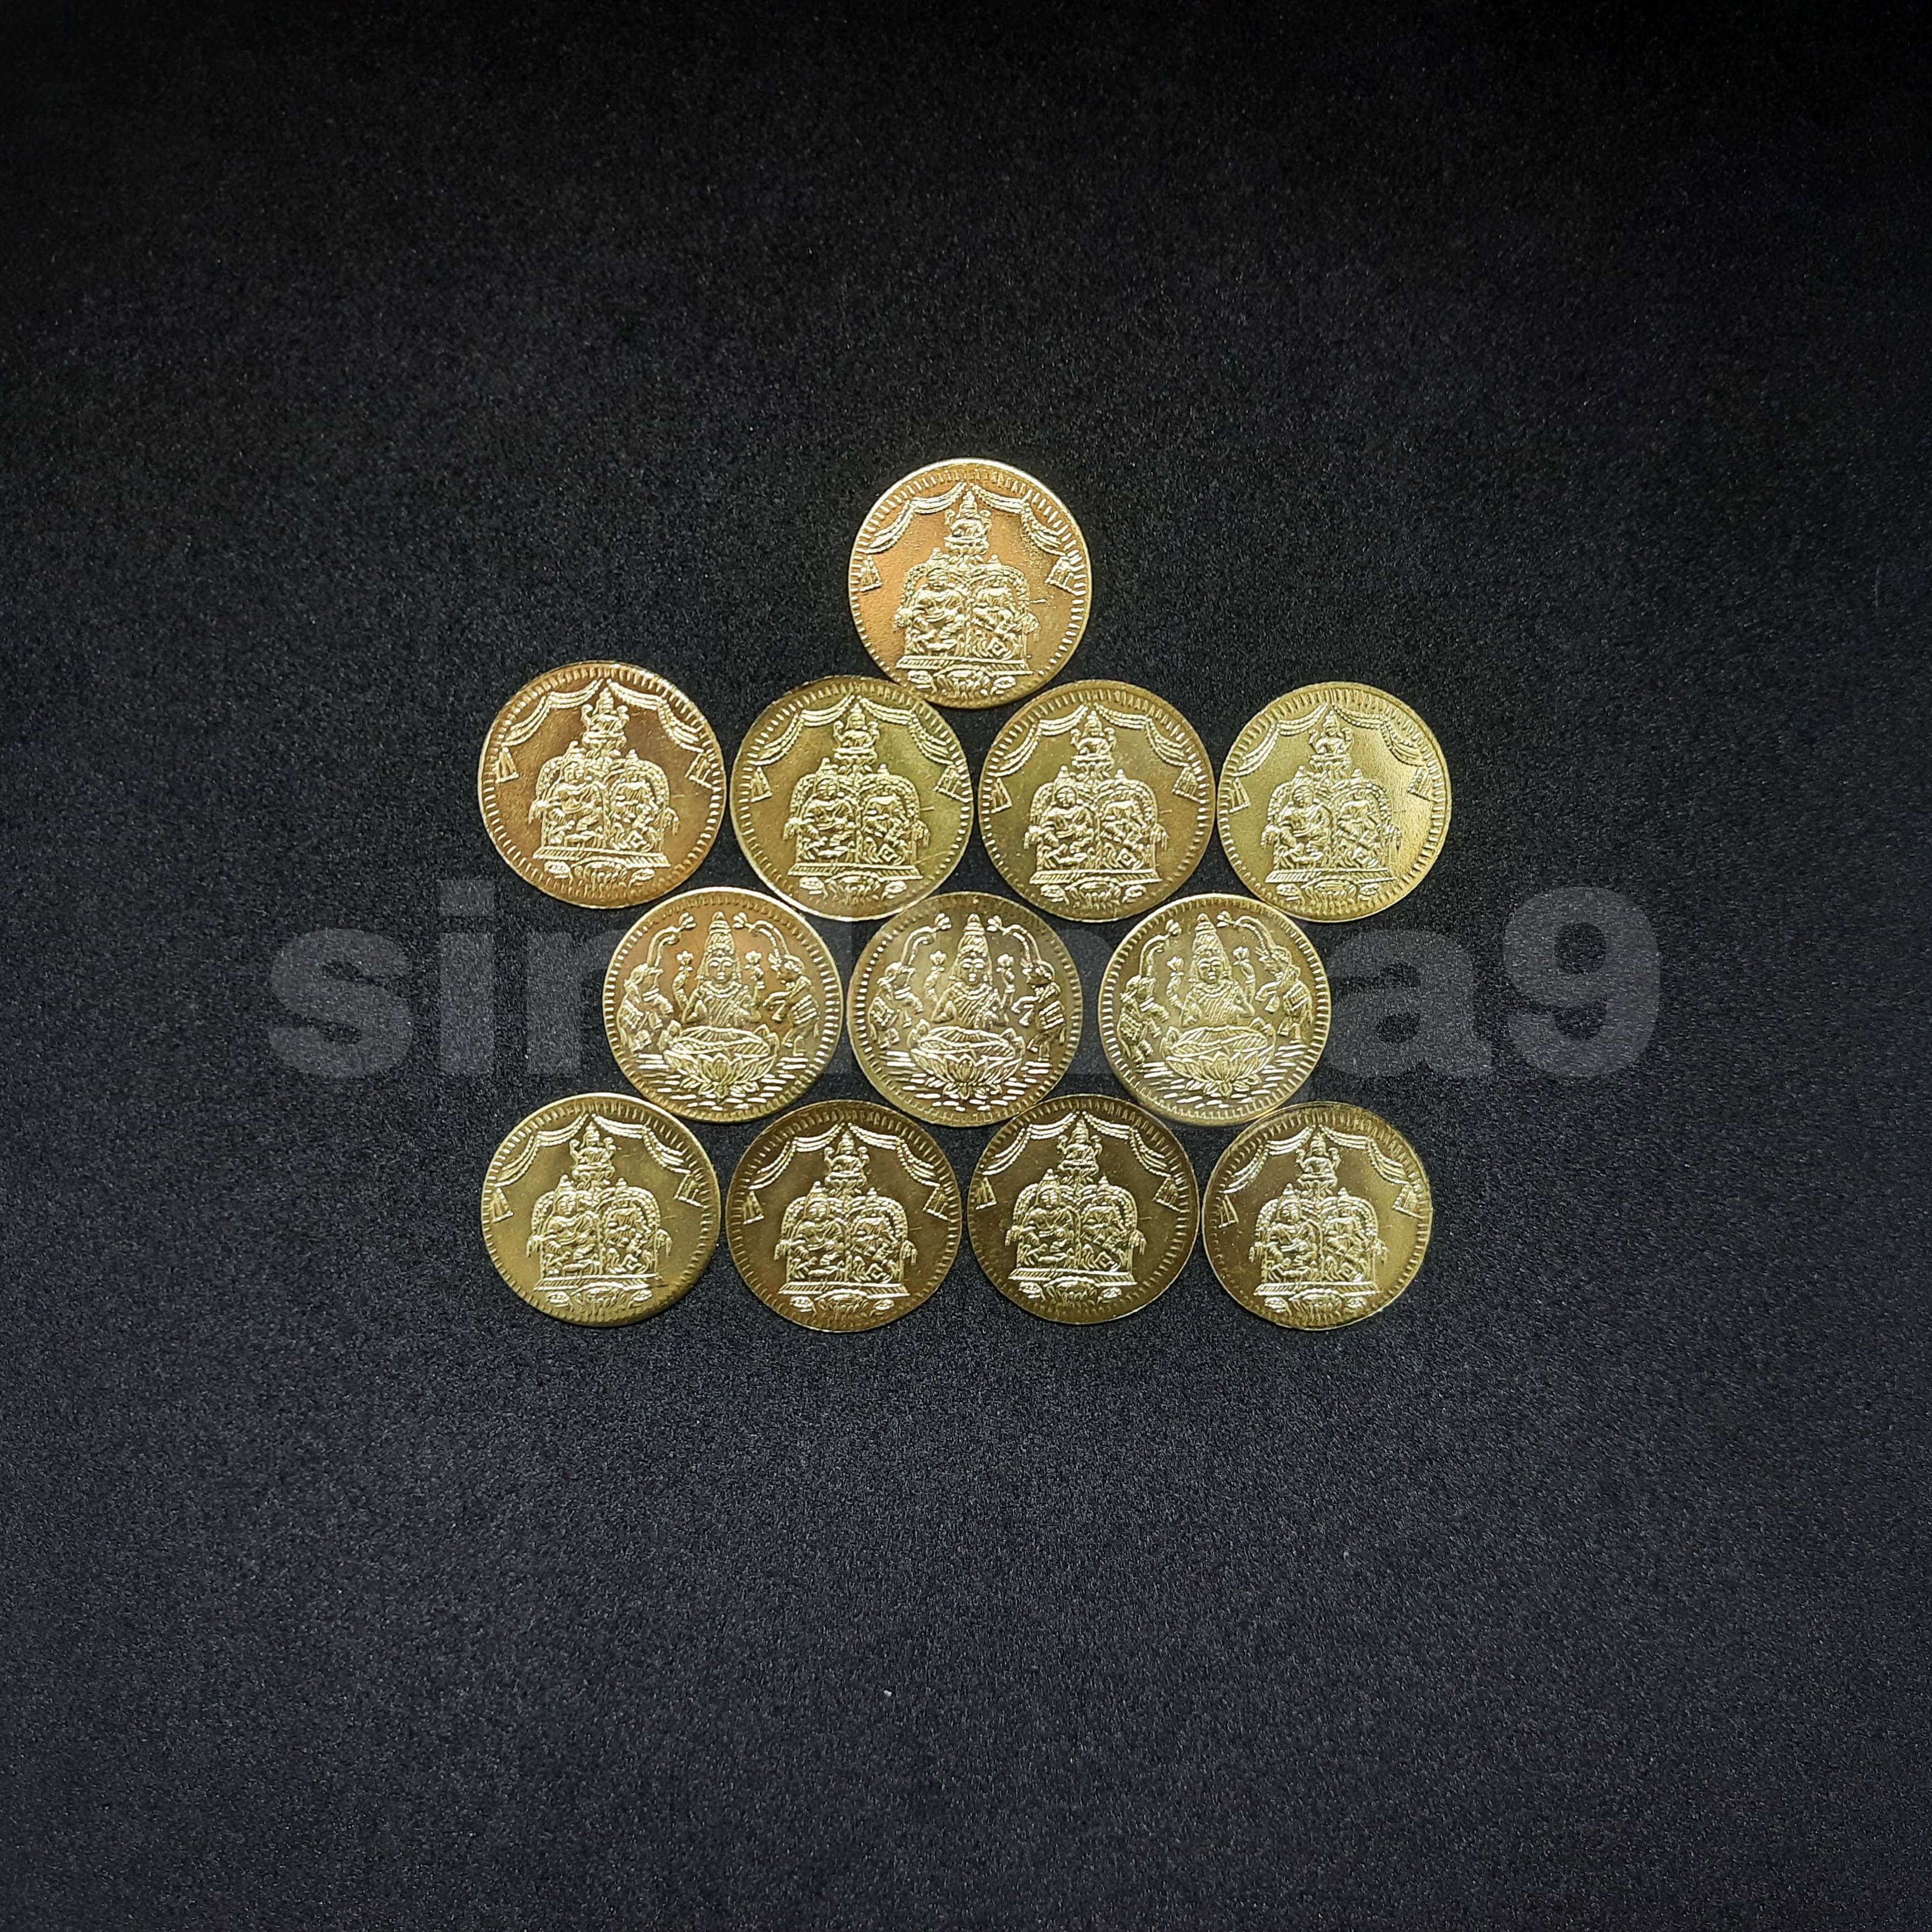 Lakshmi kubera coins - 12 coins